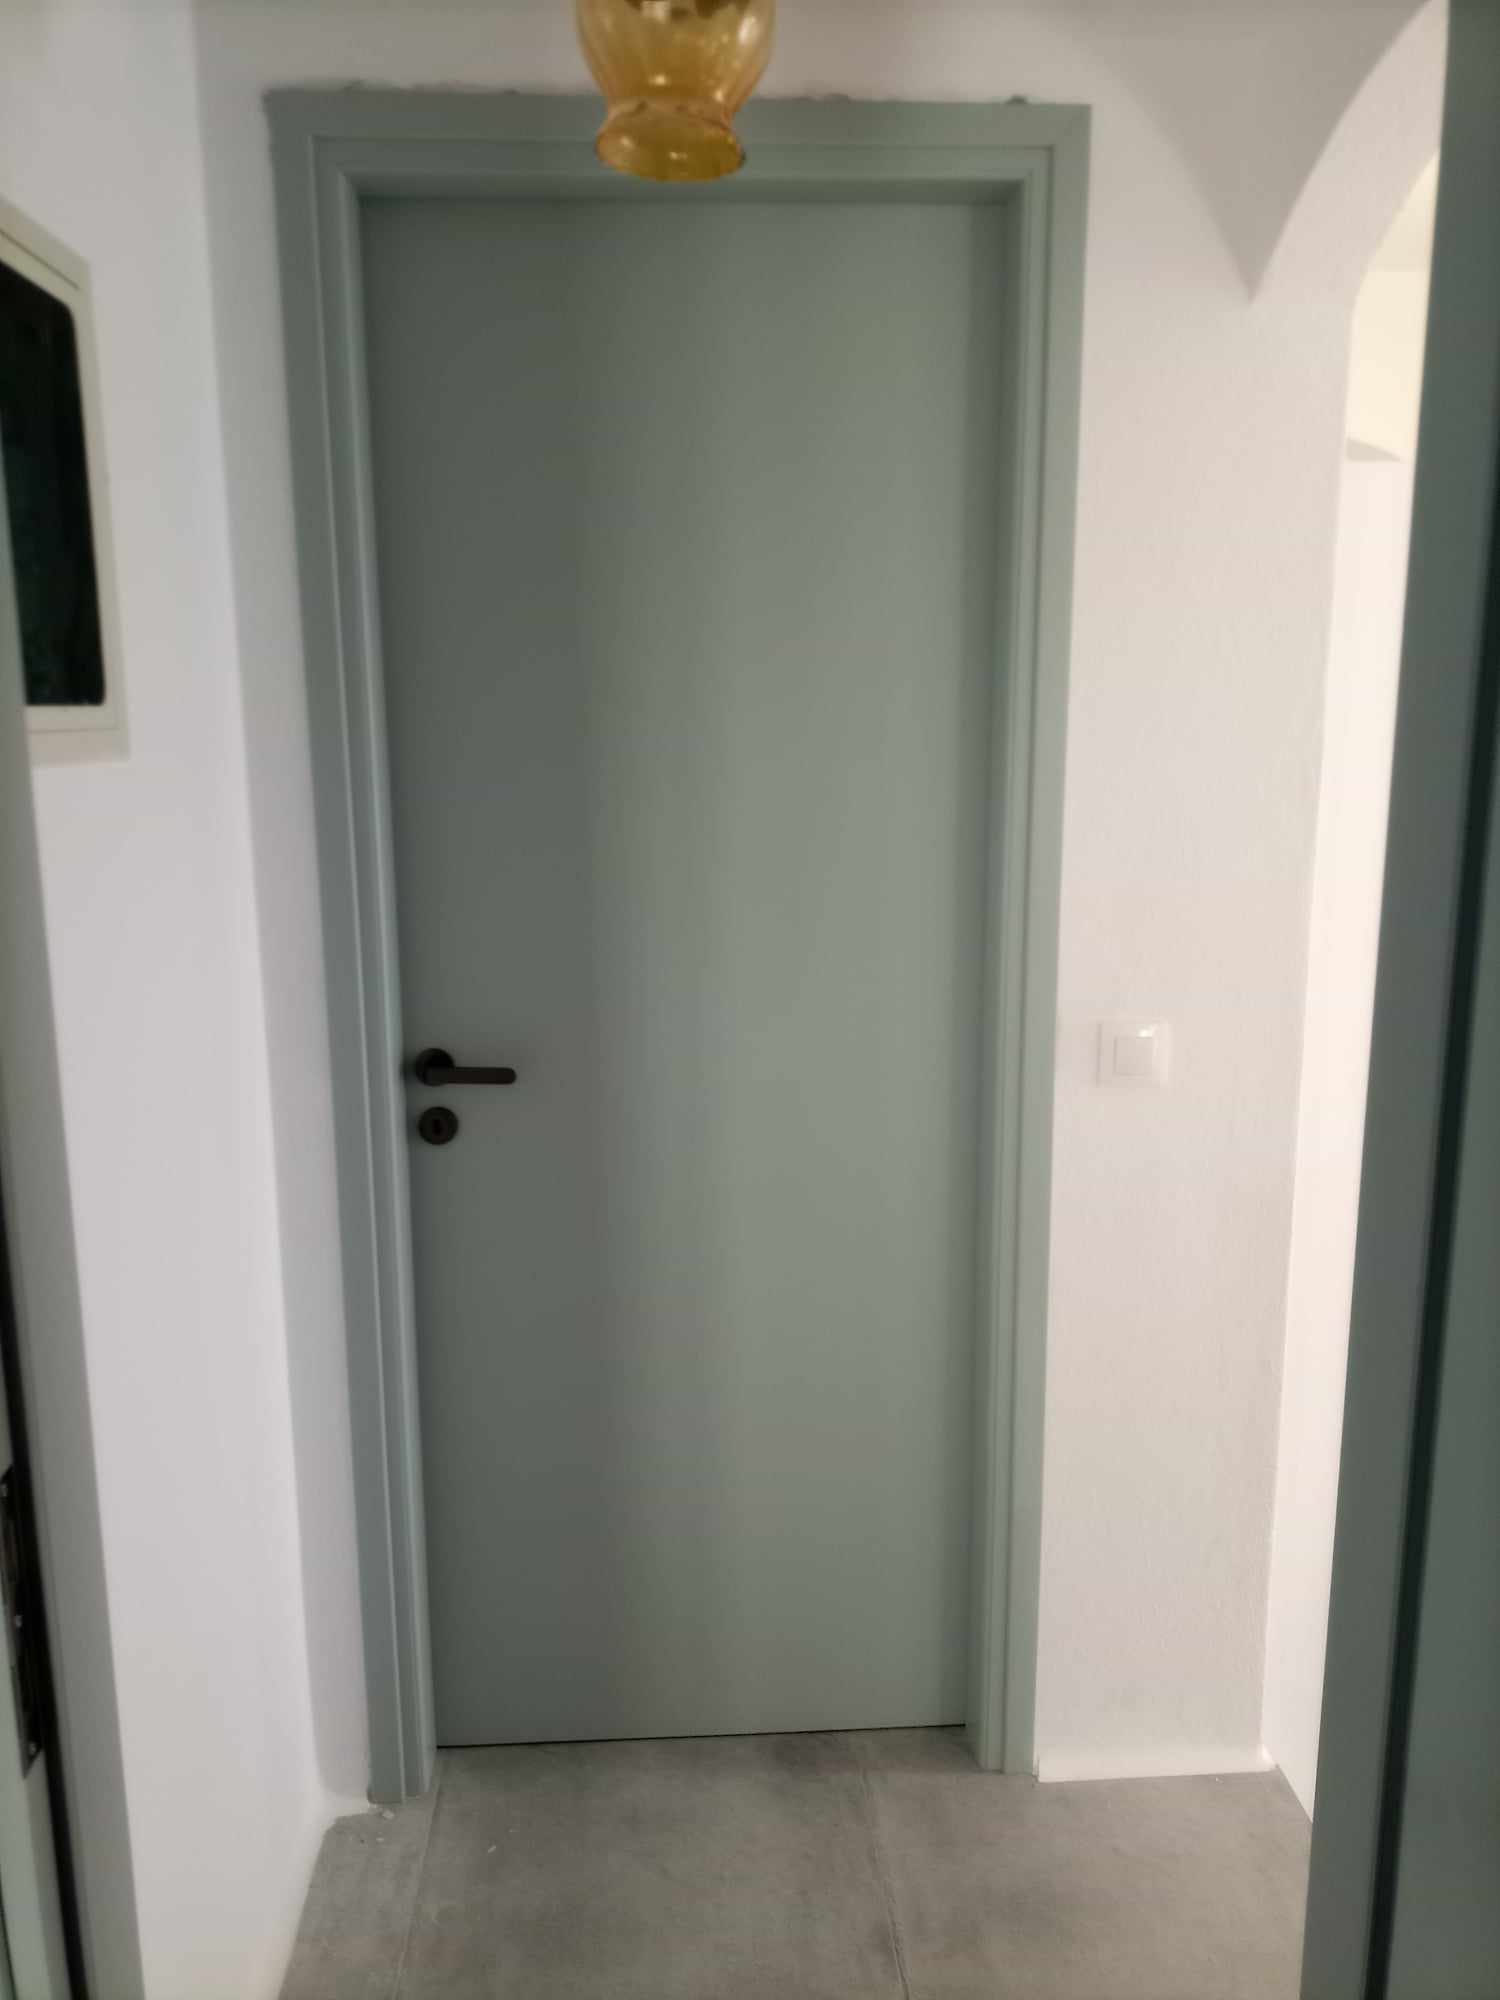 Πόρτα εσωτερική πρεσσαριστή από MDF, βαμμένη λάκα